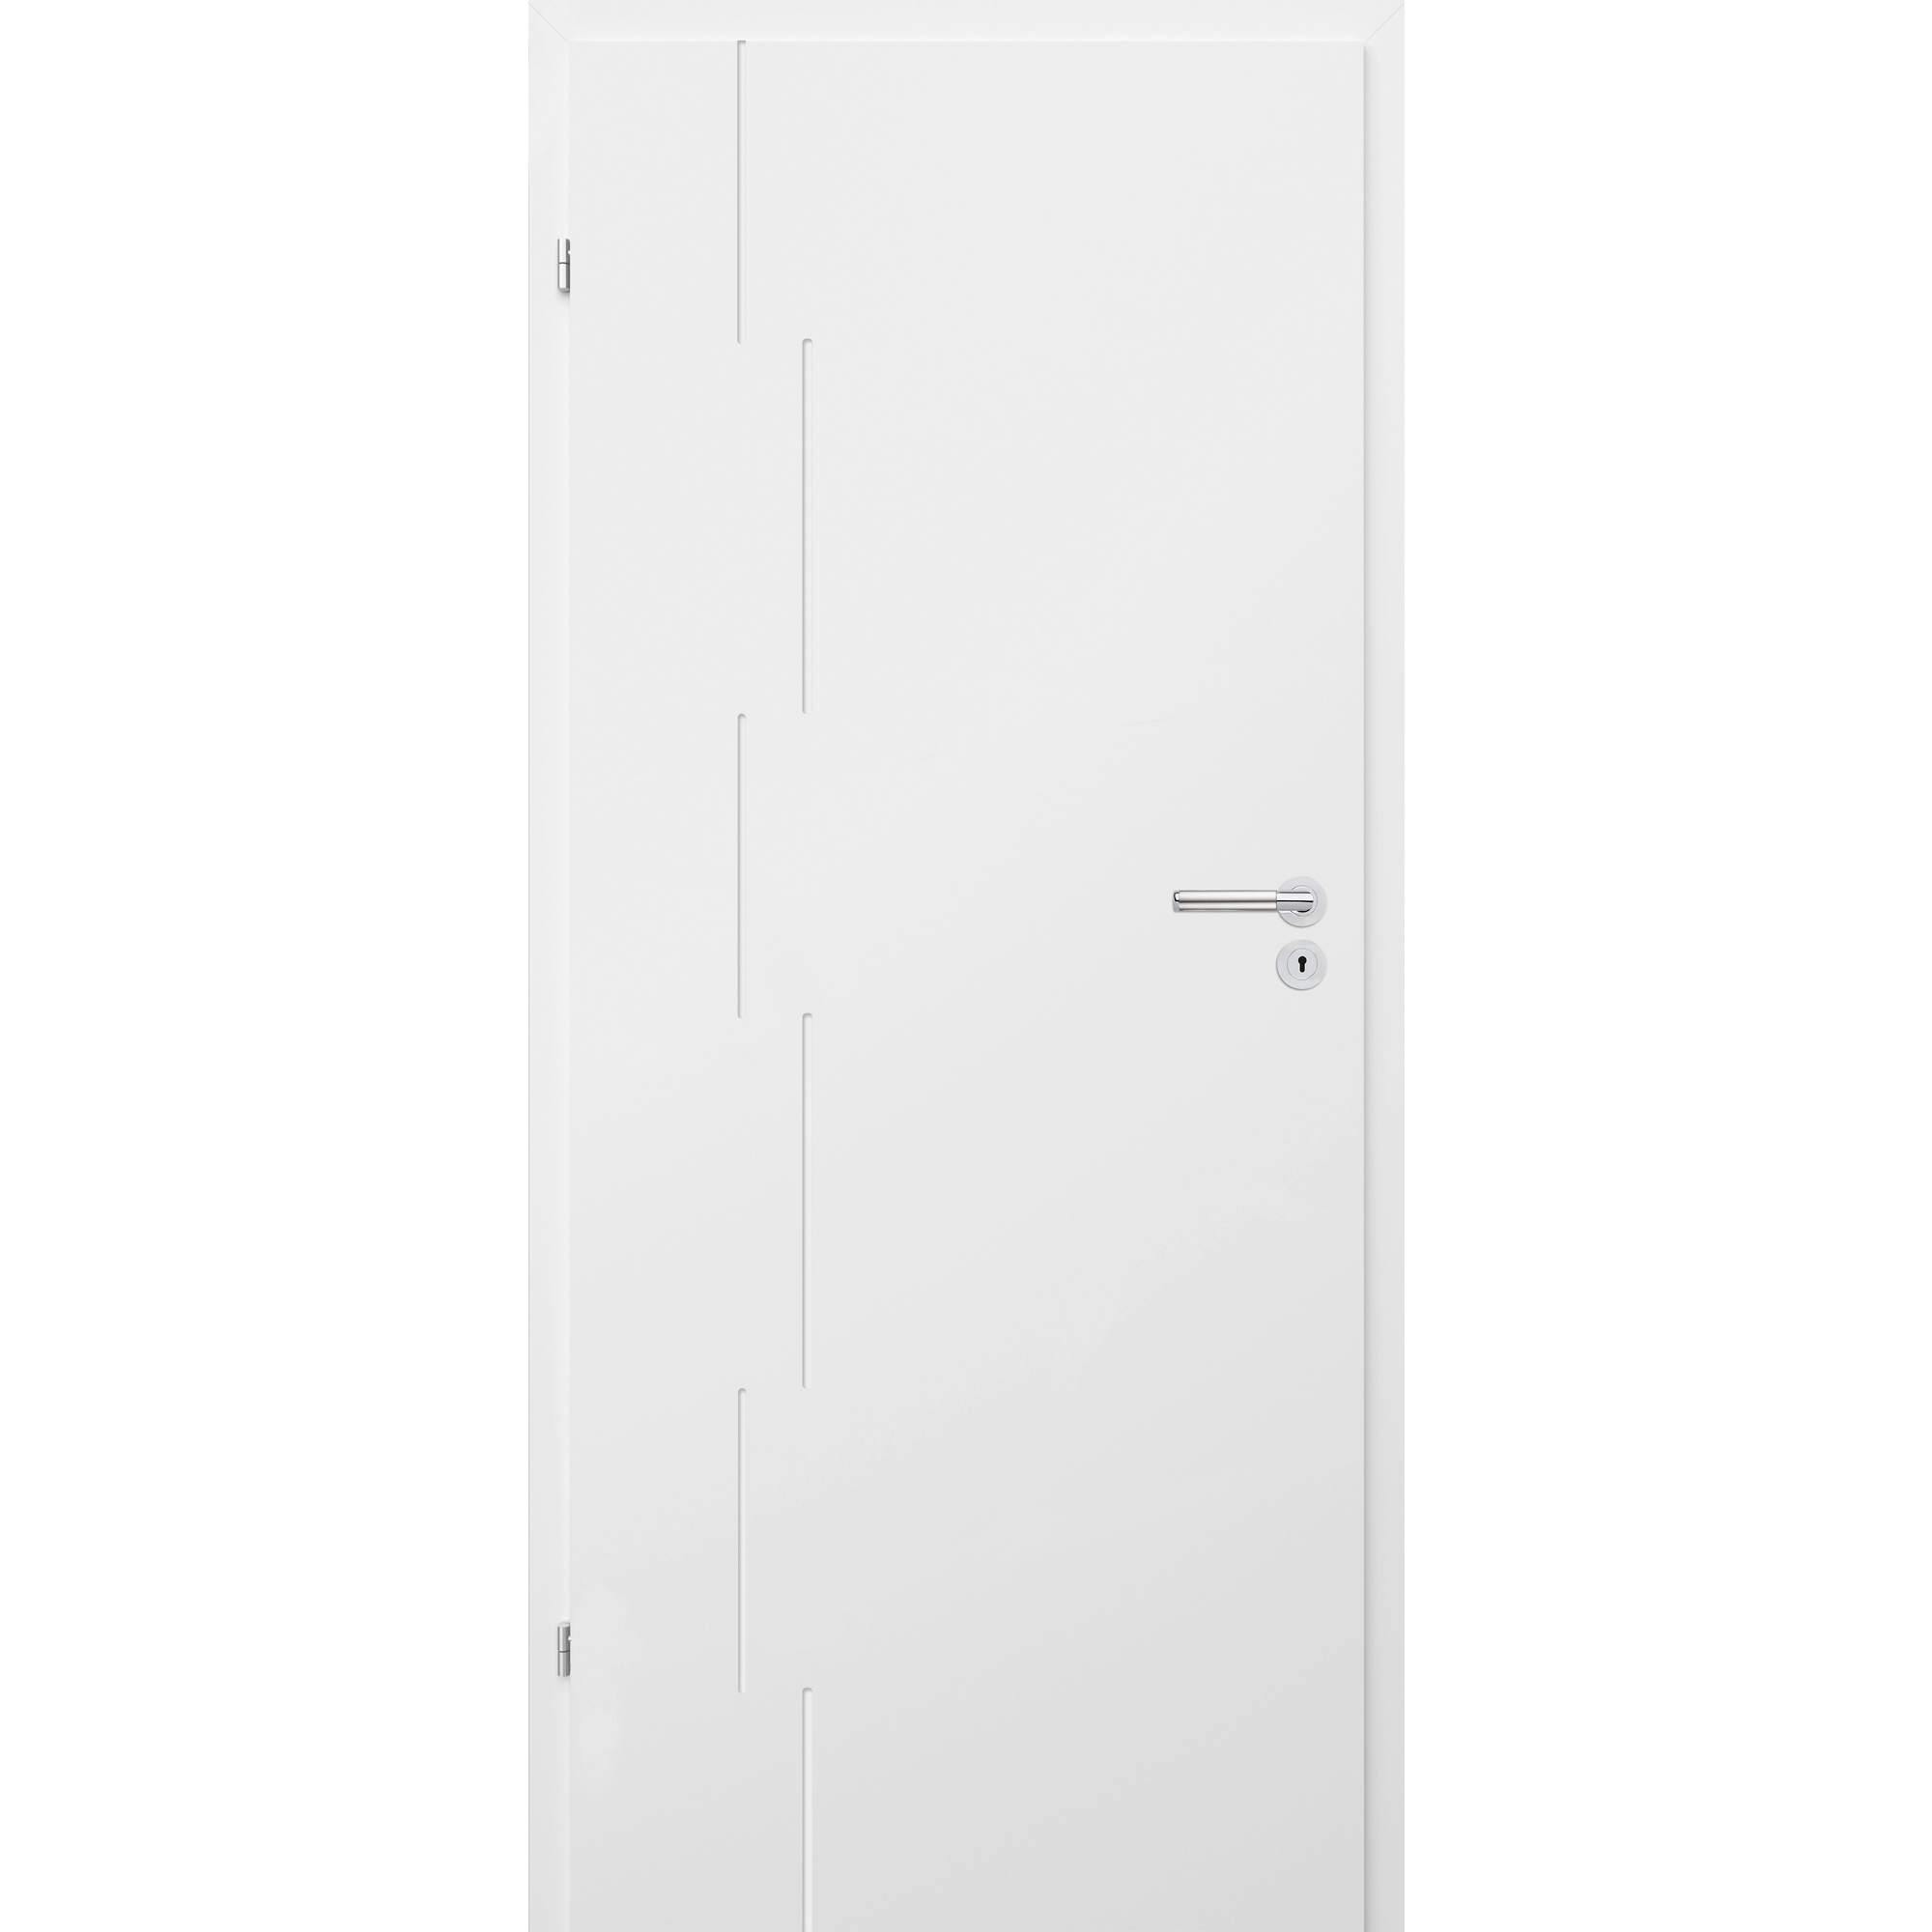 Innentür 'Modern M5' weiß 198,5 x 86 cm, Linksanschlag + product picture